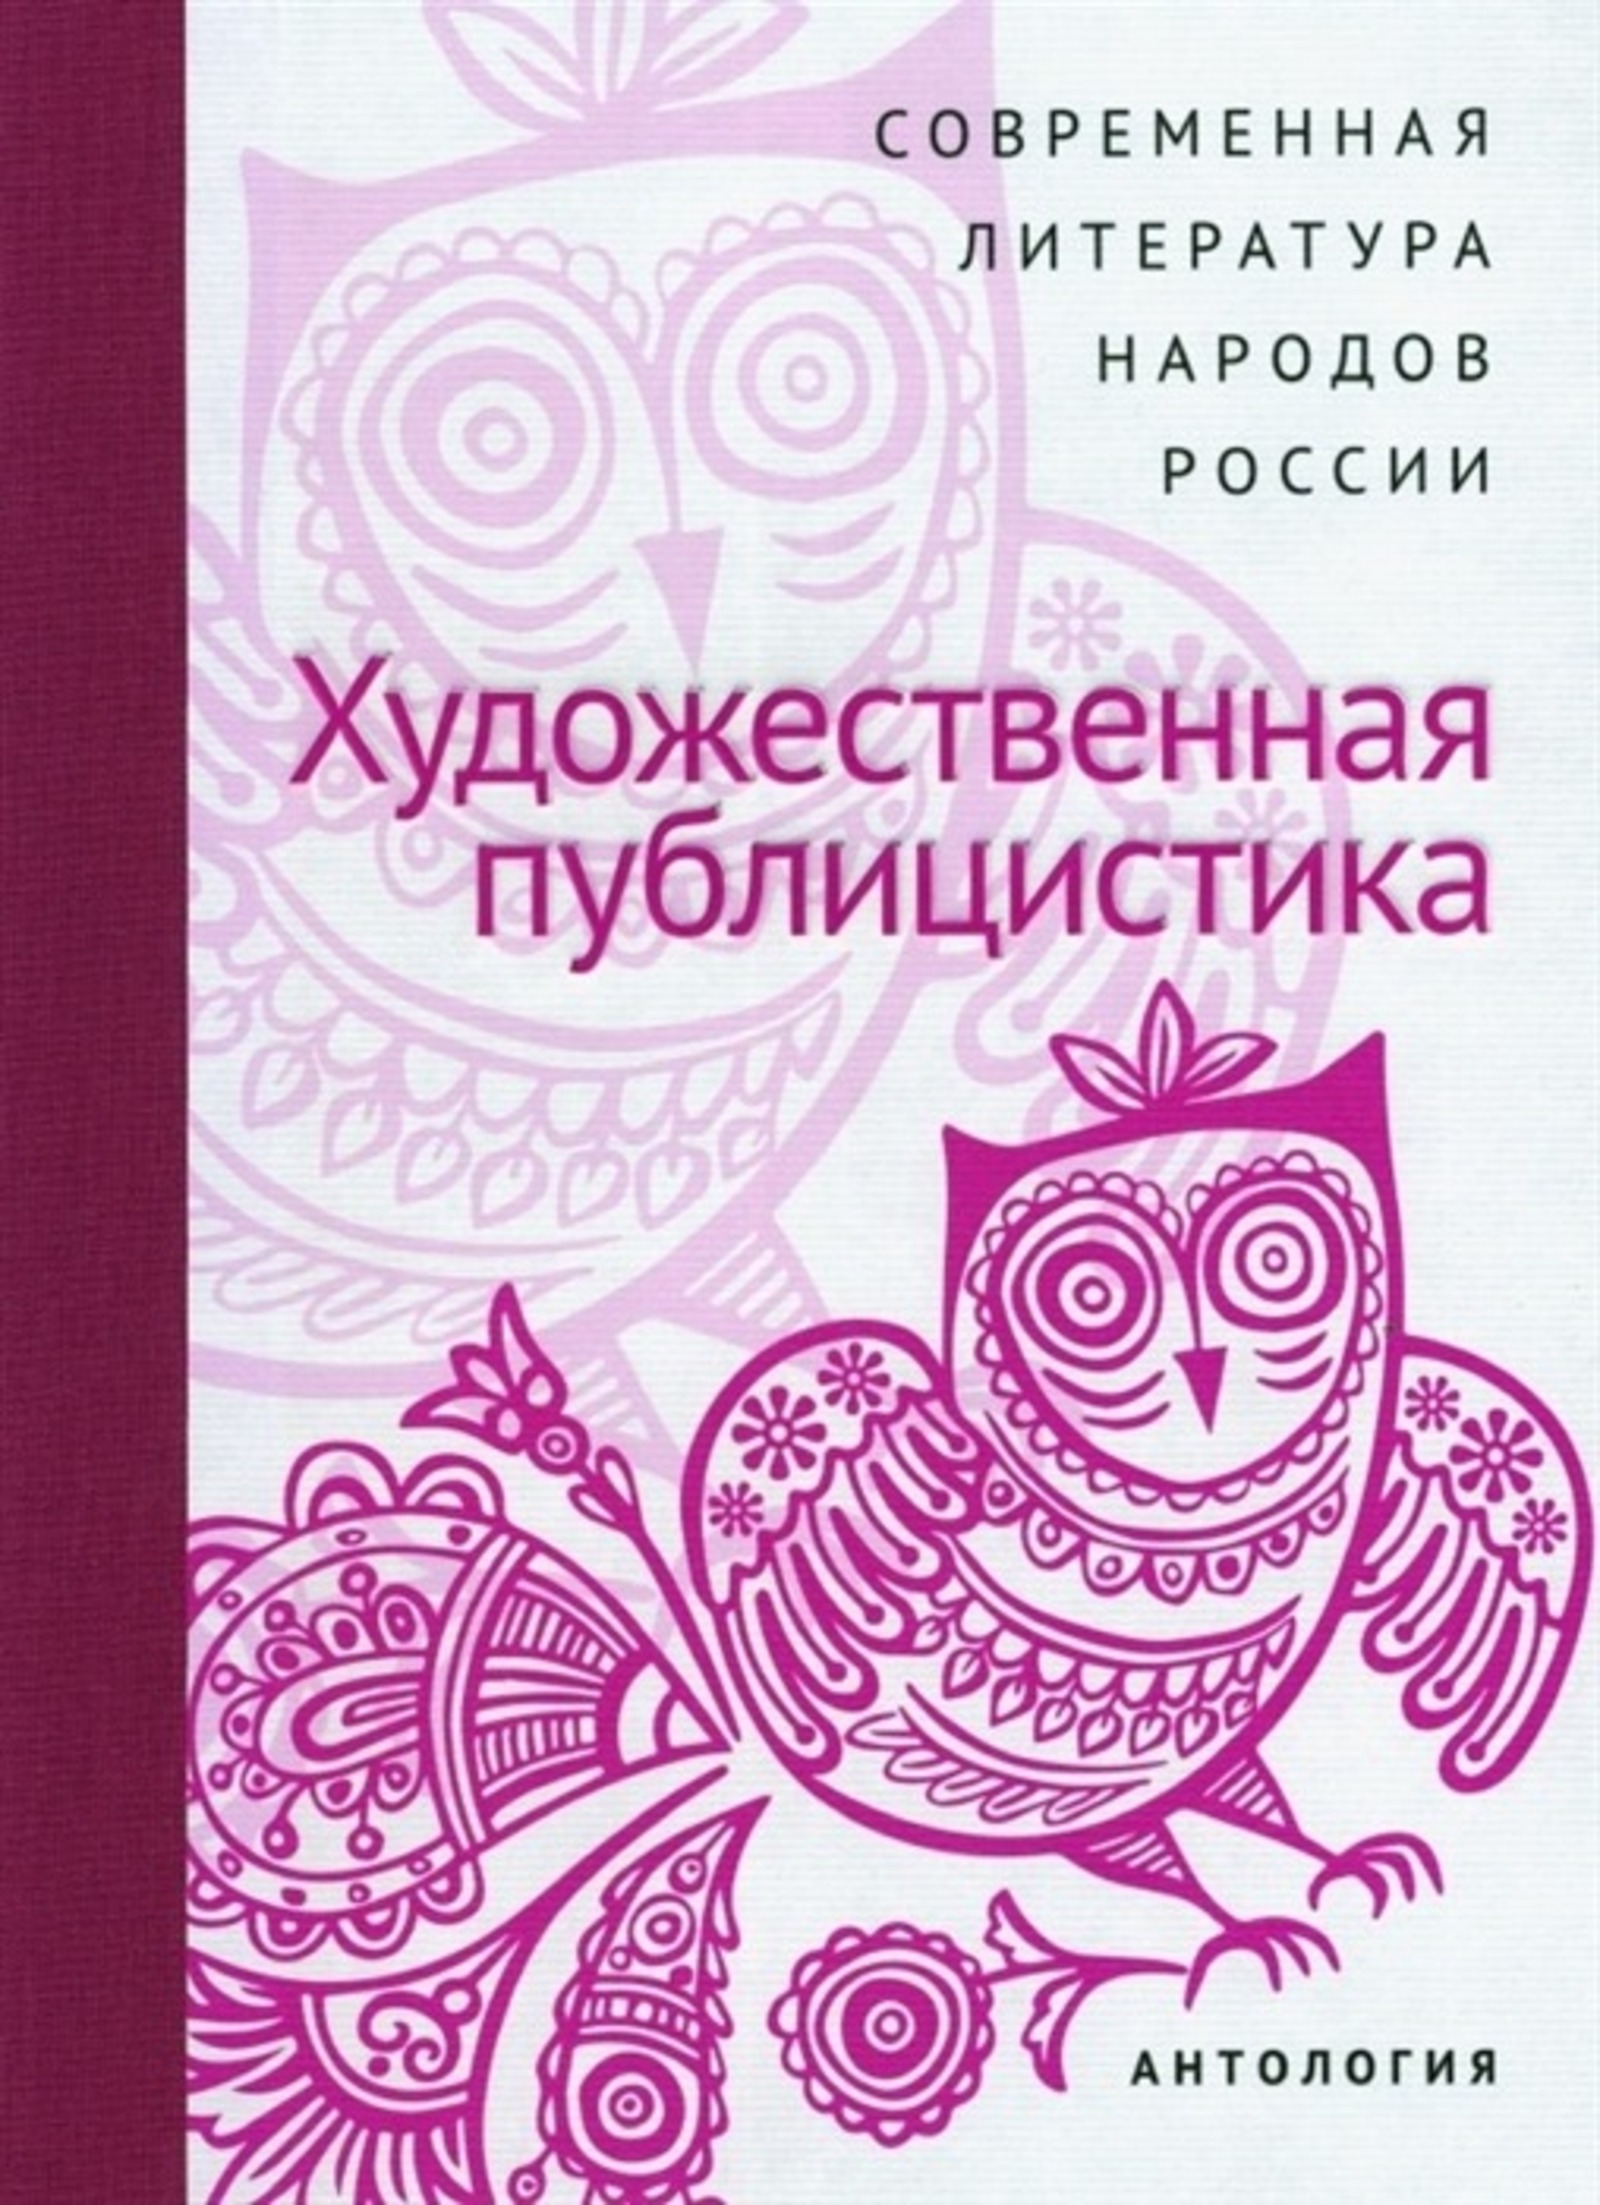 Статьи башкирских писателей представлены в Антологии художественной публицистики